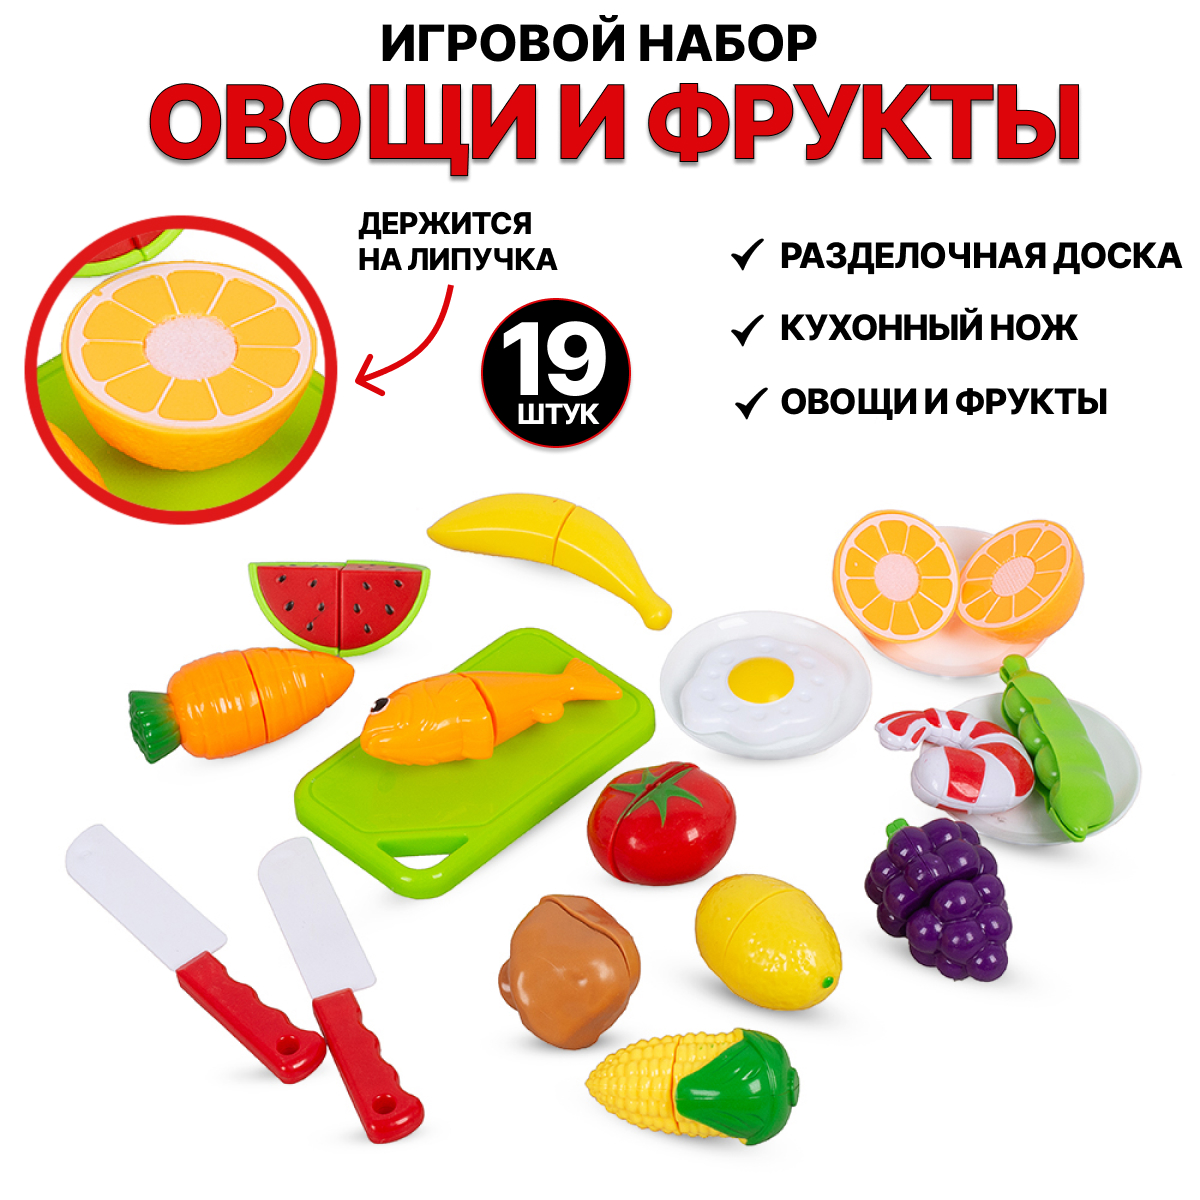 Игровой набор Tongde Овощи и фрукты для резки на липучках 19 предметов 666-85 игровой набор овощи для резки tongde на липучках с ножом 6 предметов 3303 5